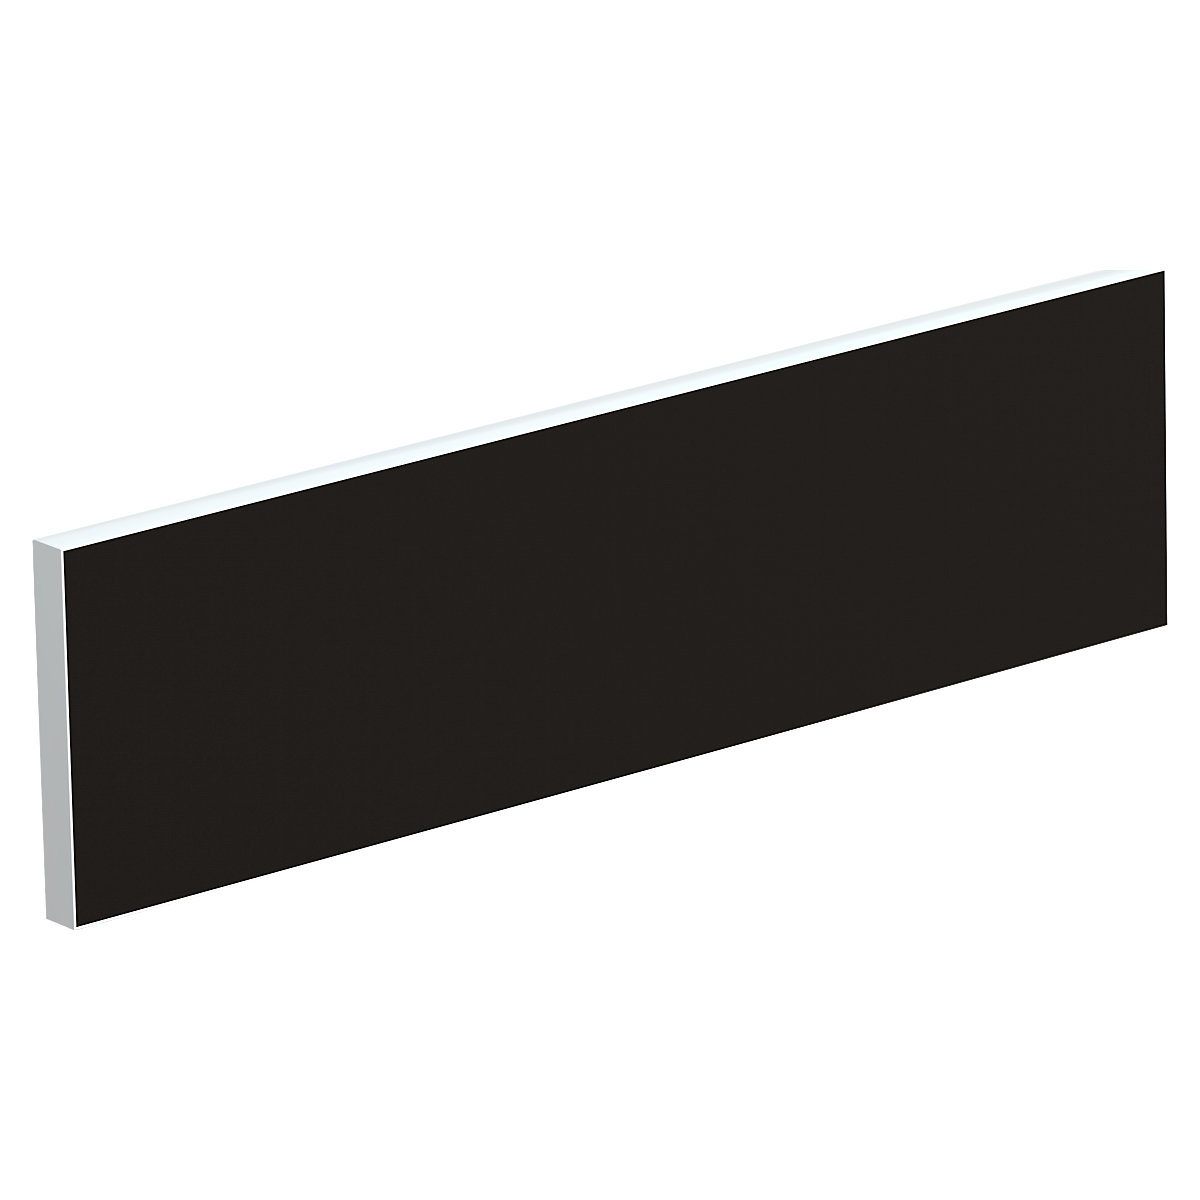 Tischtrennwand für Teamschreibtische, Breite 1200 mm, Bezug schwarz-8